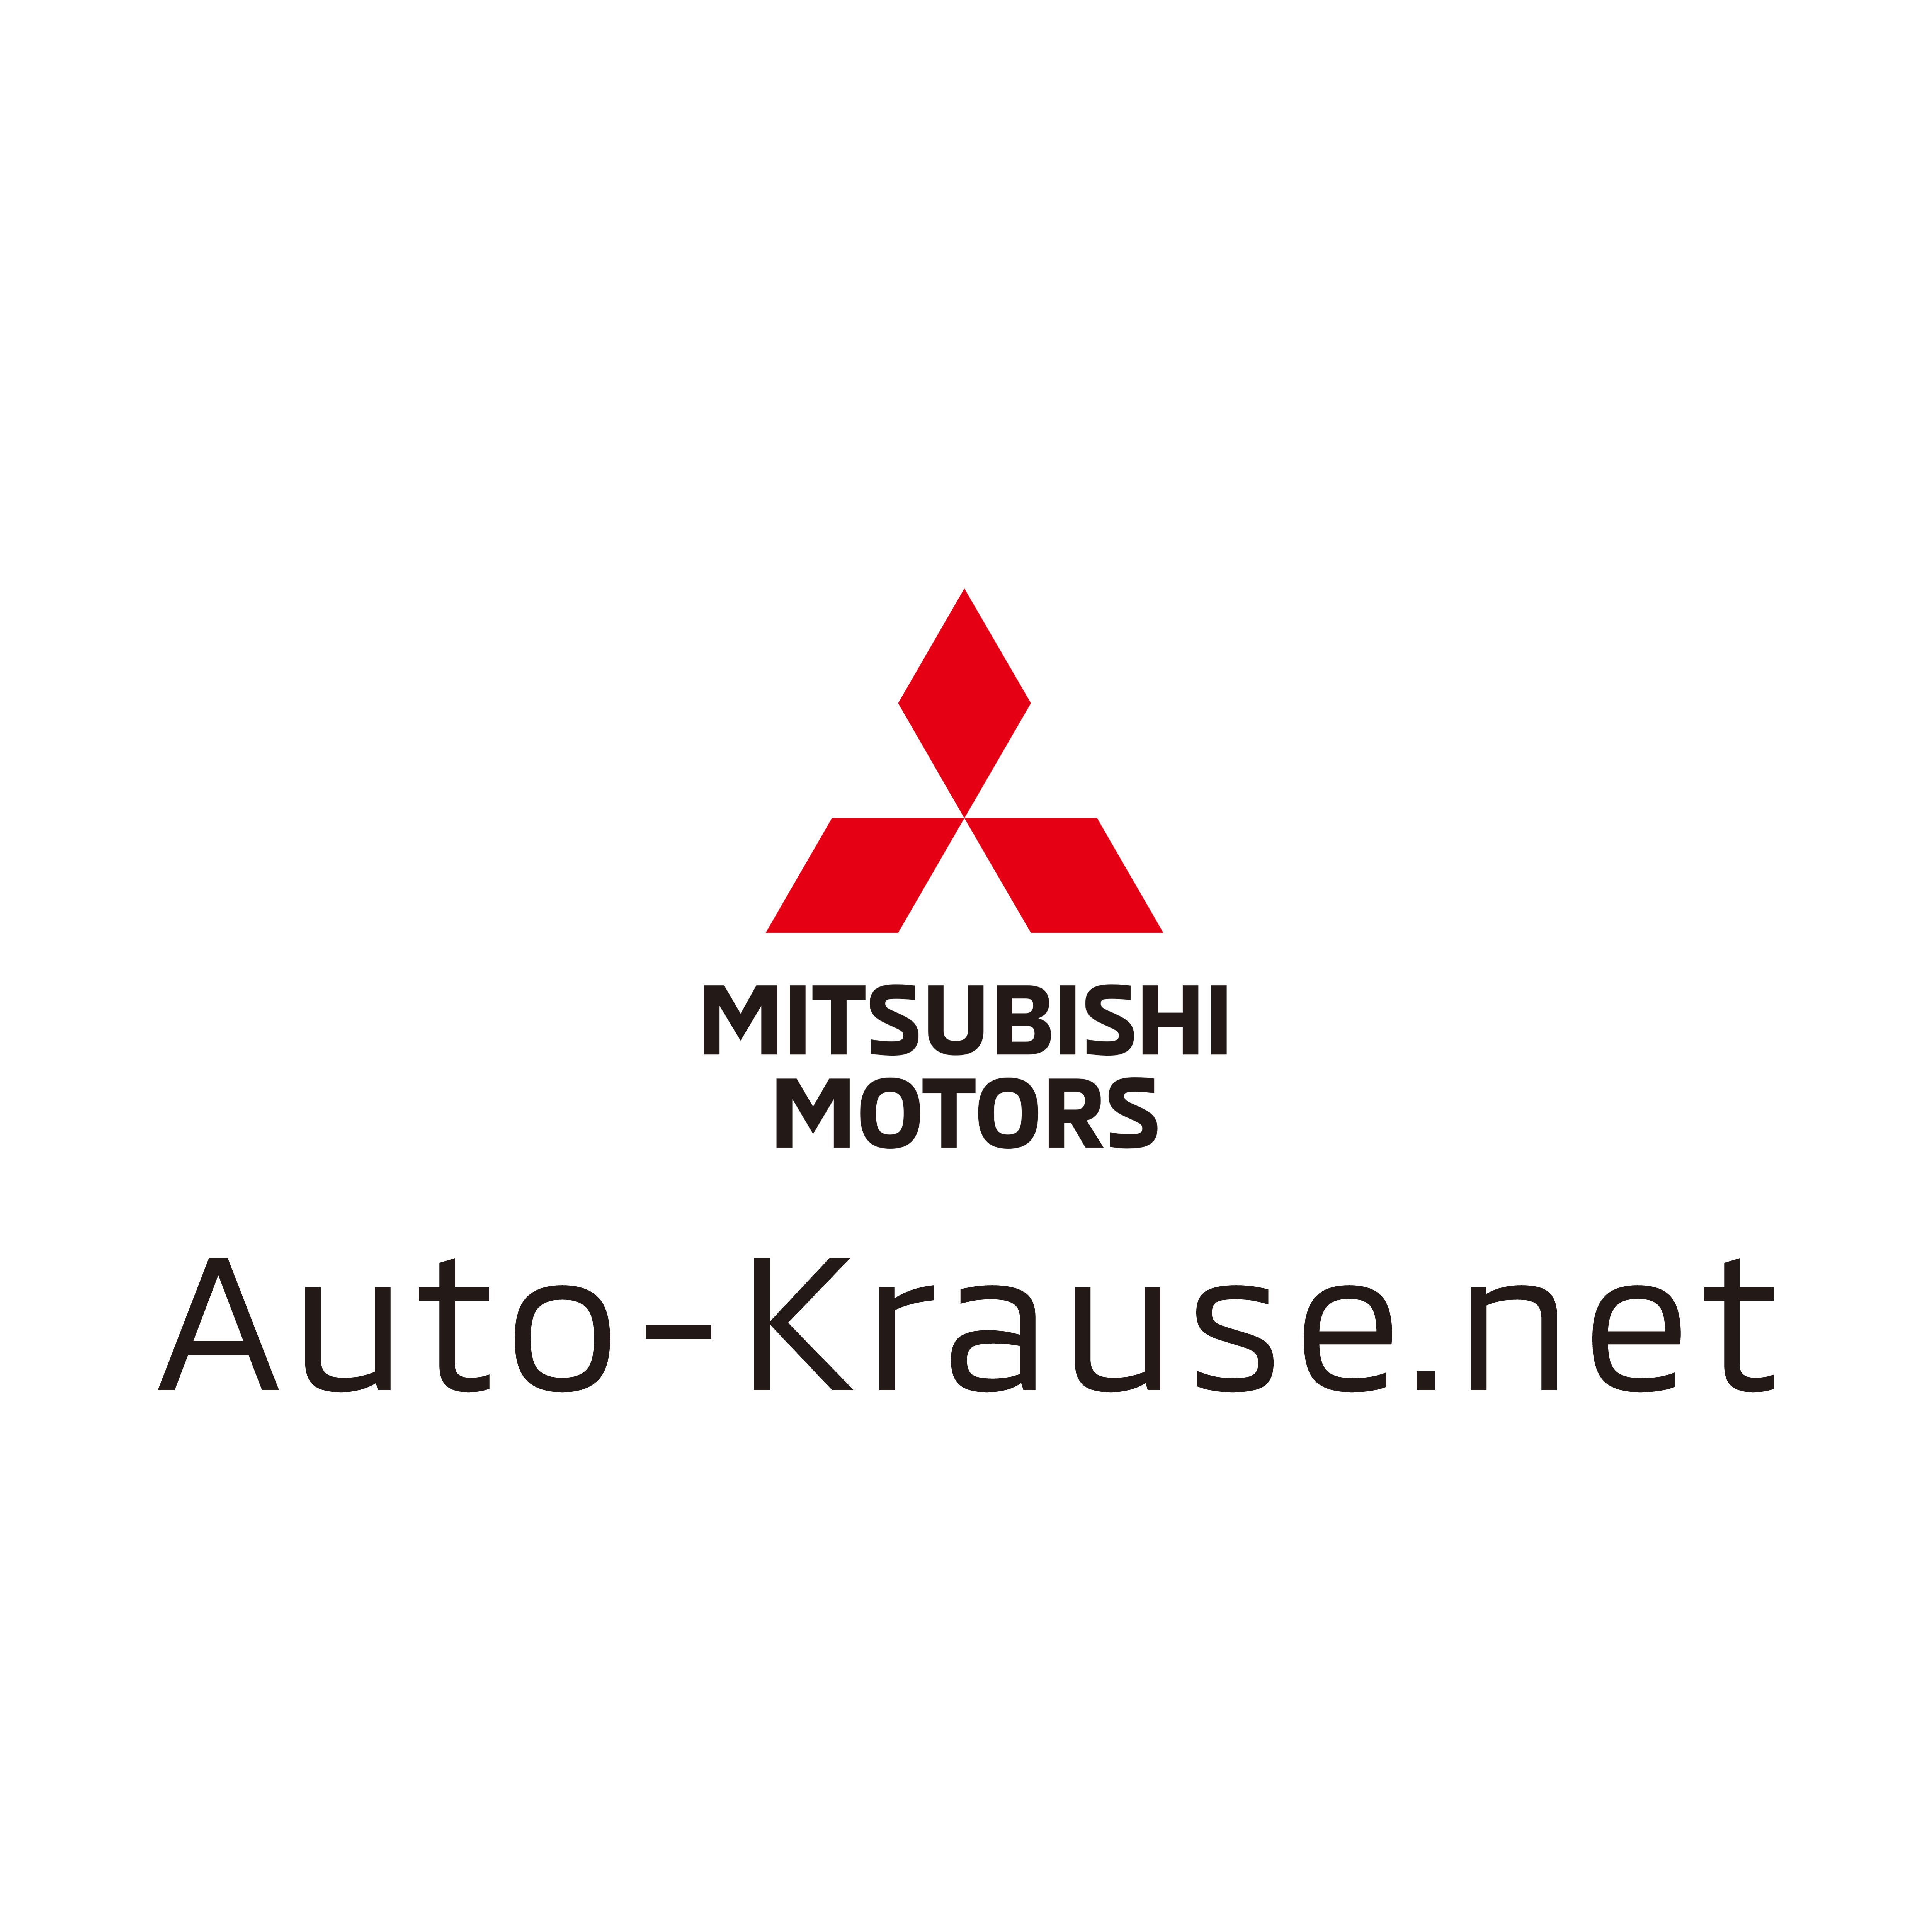 Auto-Krause Antwerpener Straße GmbH & Co. KG